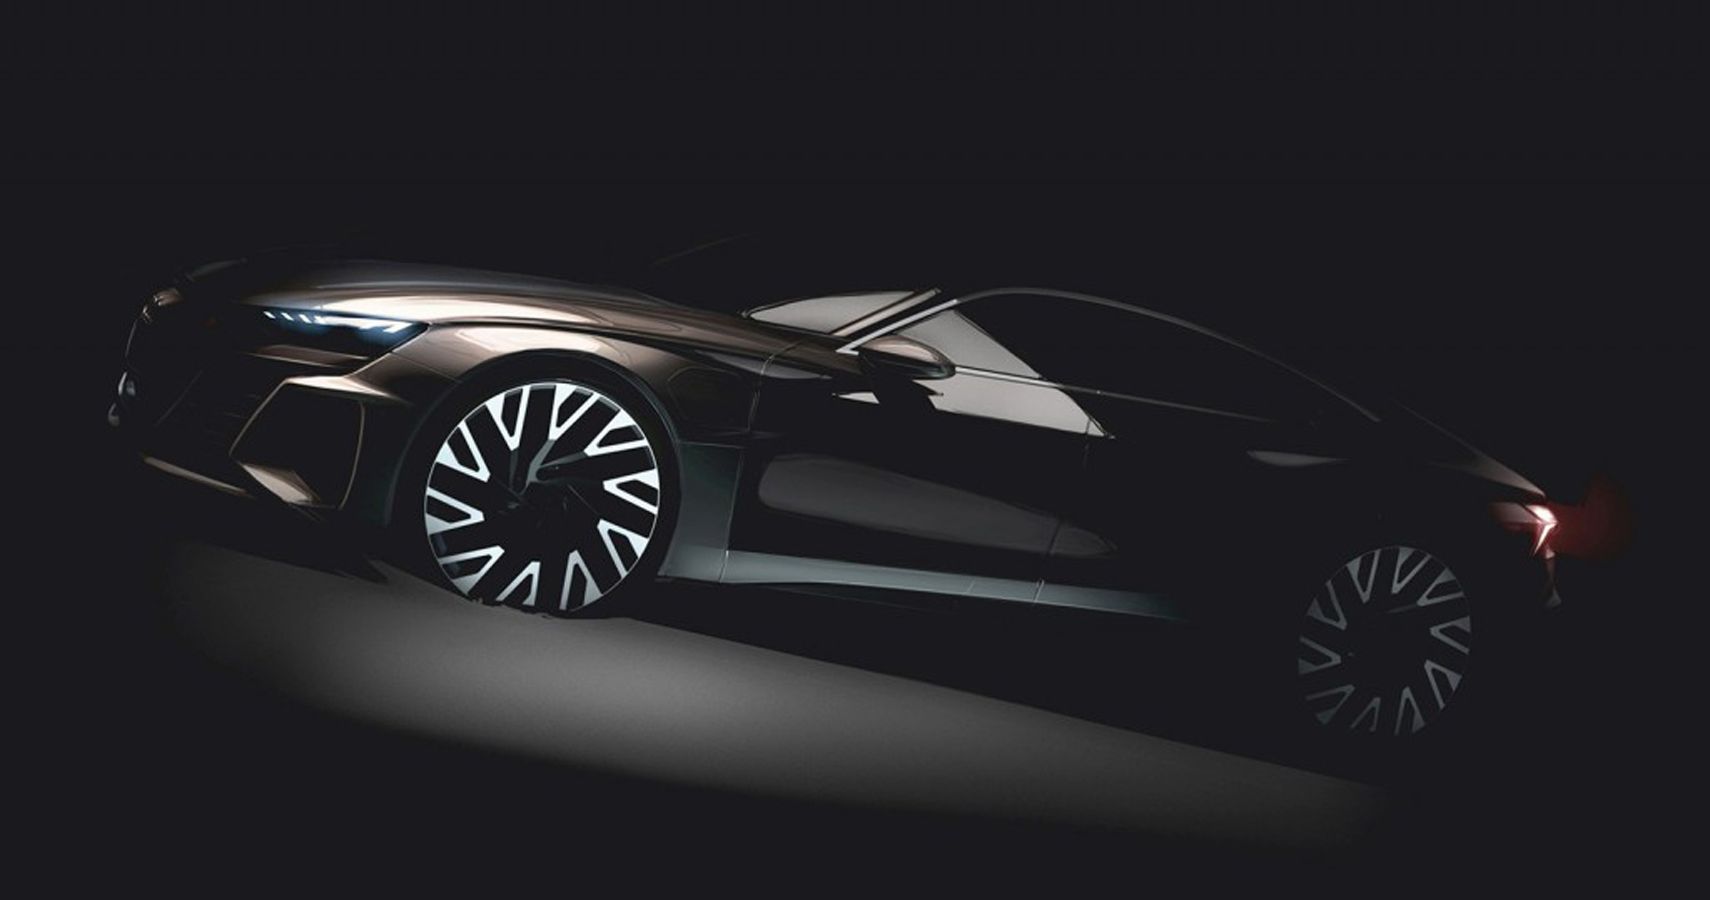 Audi E Tron Gt Can Outpace Tesla Model S P100d Says German